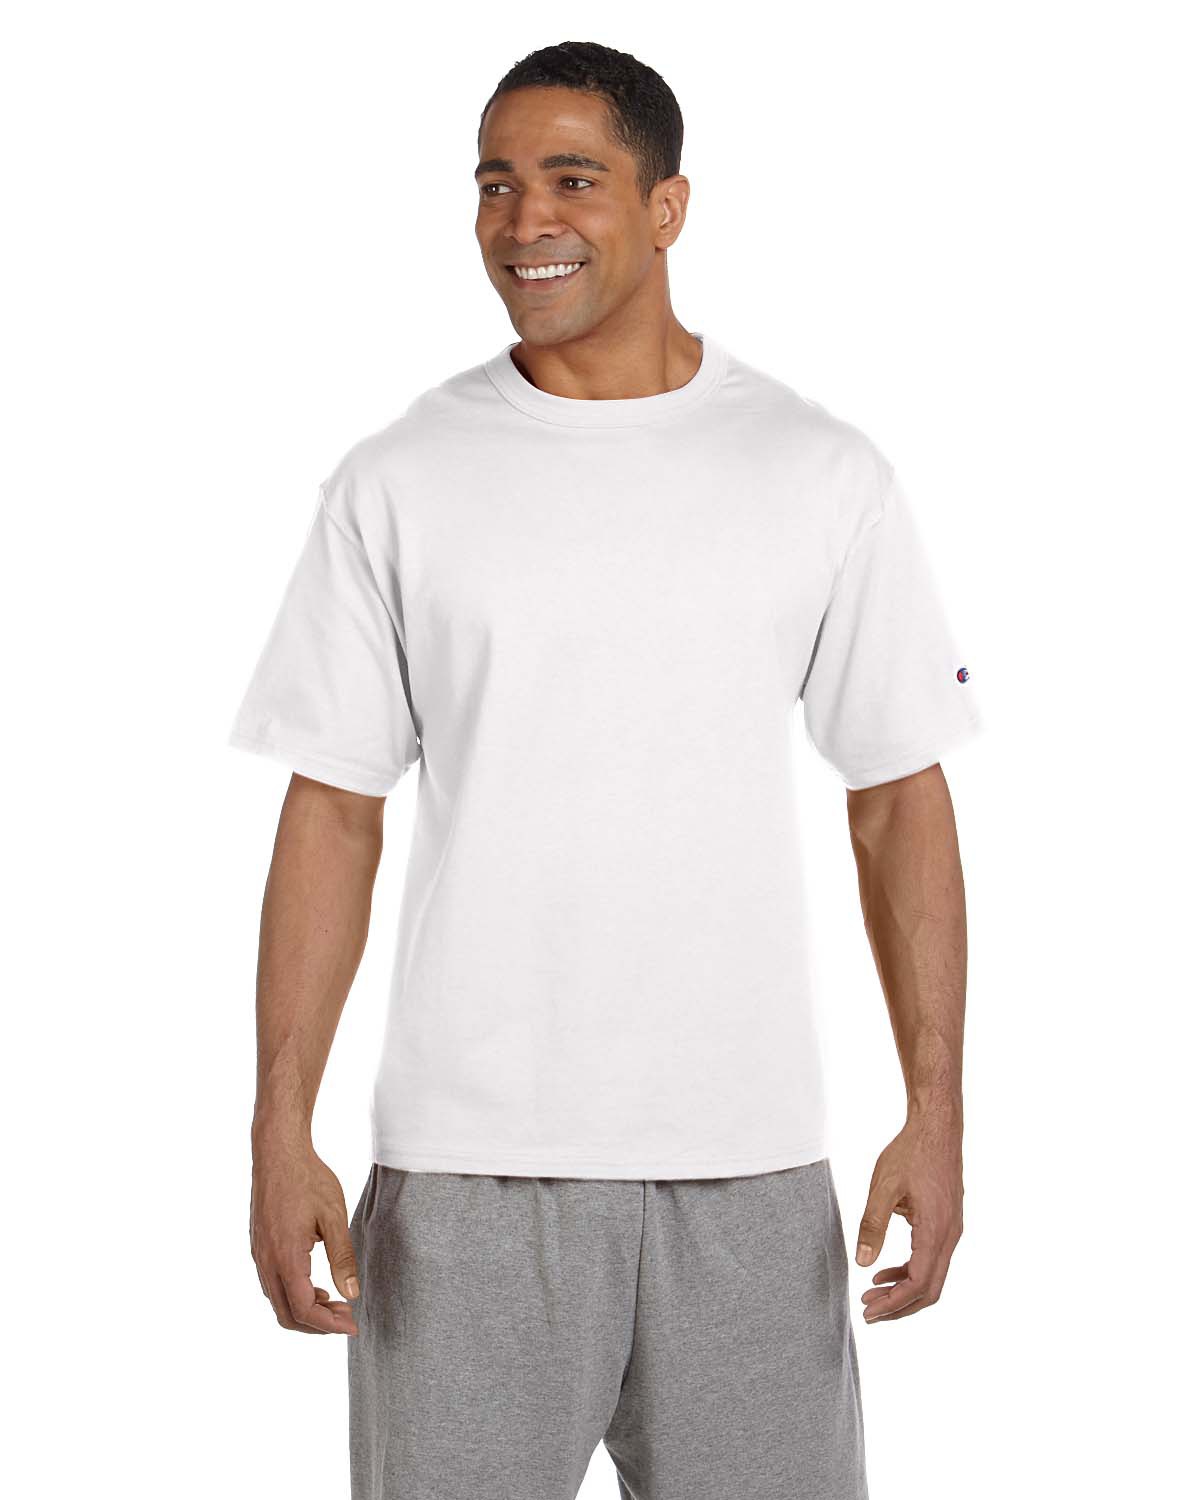 Champion Men's T-Shirt - White - M